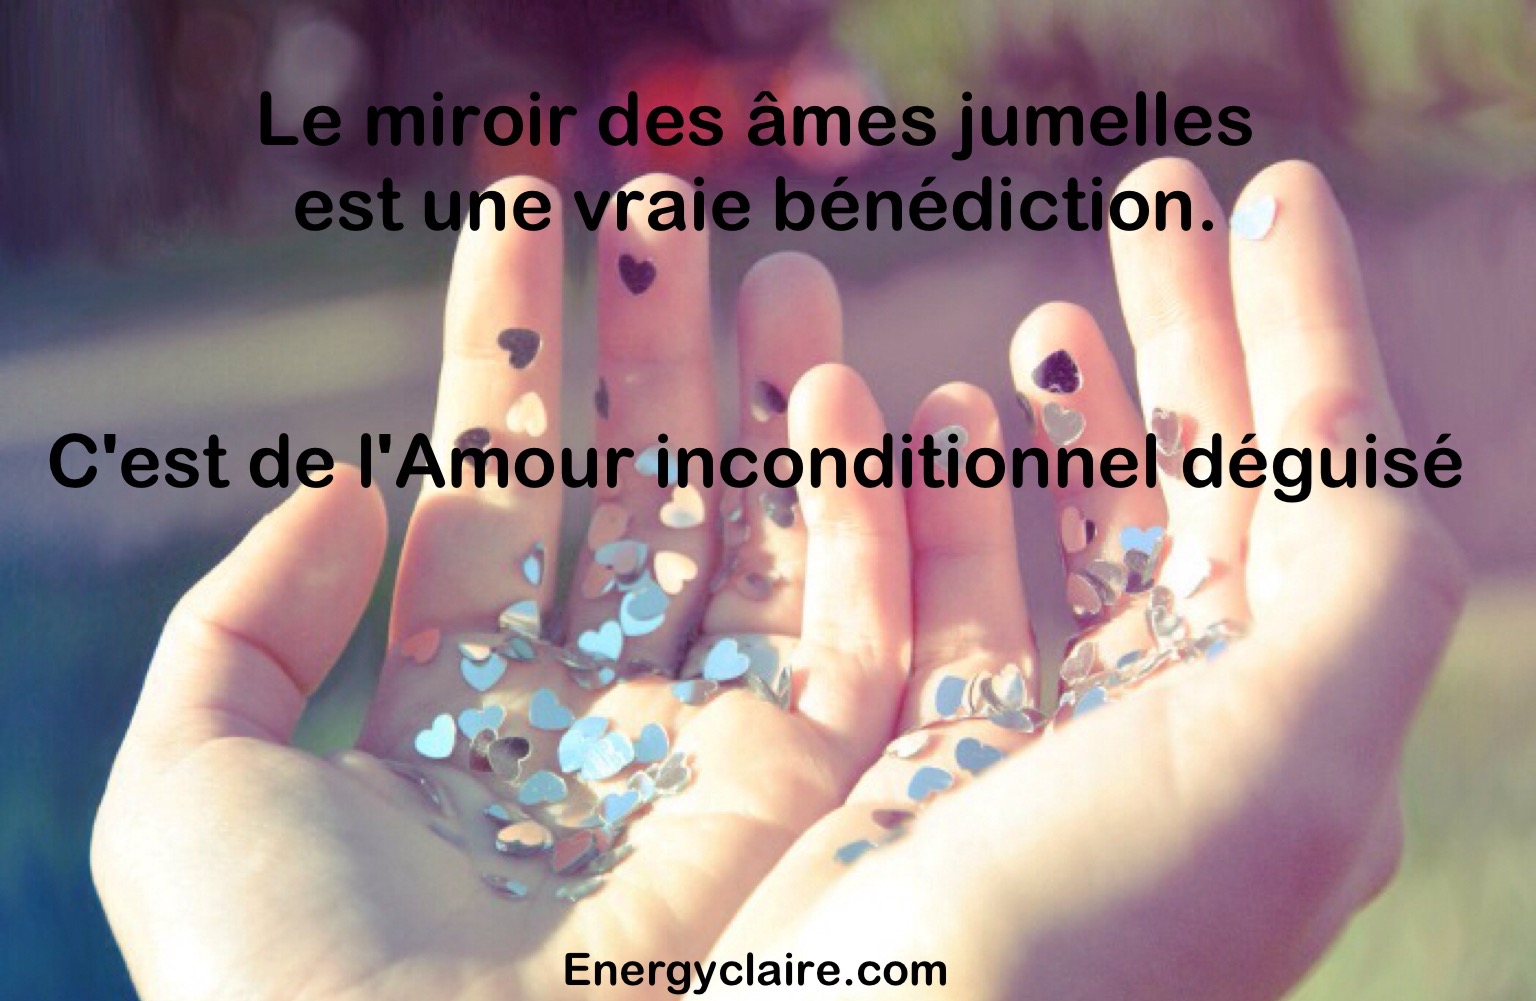 Le miroir desFlammes jumelles www.energyclaire.com